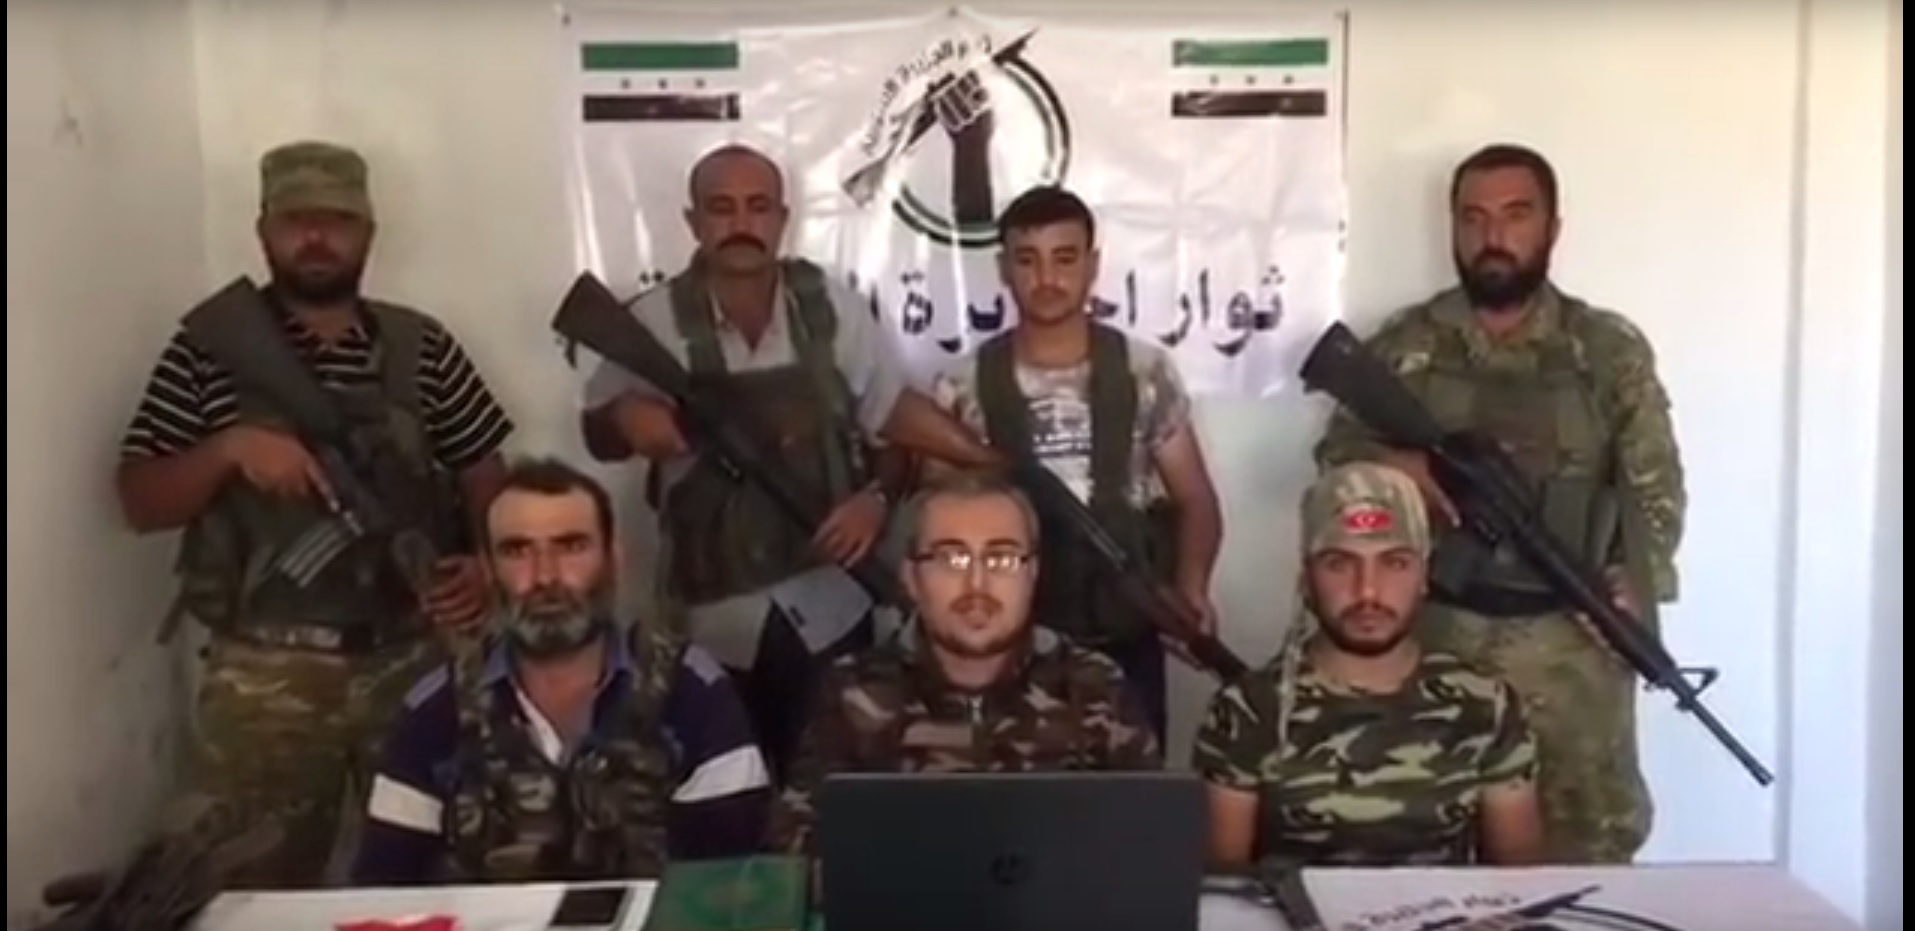 فيديو (ثوار الكرد الشرفاء) يعلنون انضمامهم لفصيل ثوار الجزيرة السورية